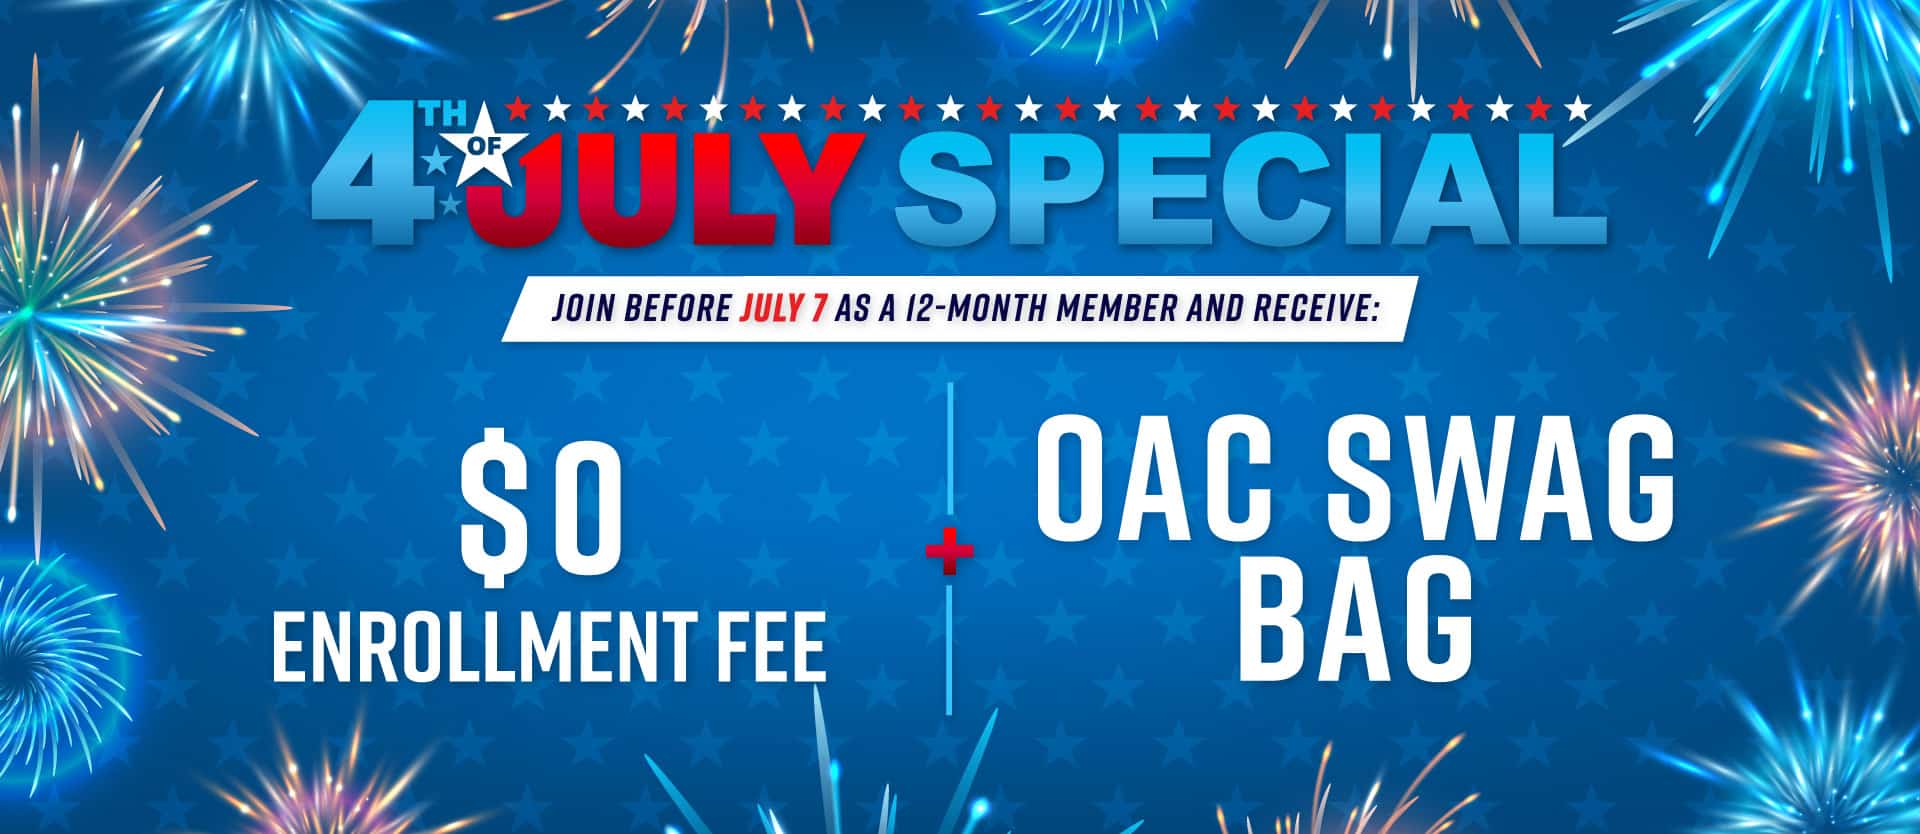 $0 Enrollment Fee and OAC Swag Bag